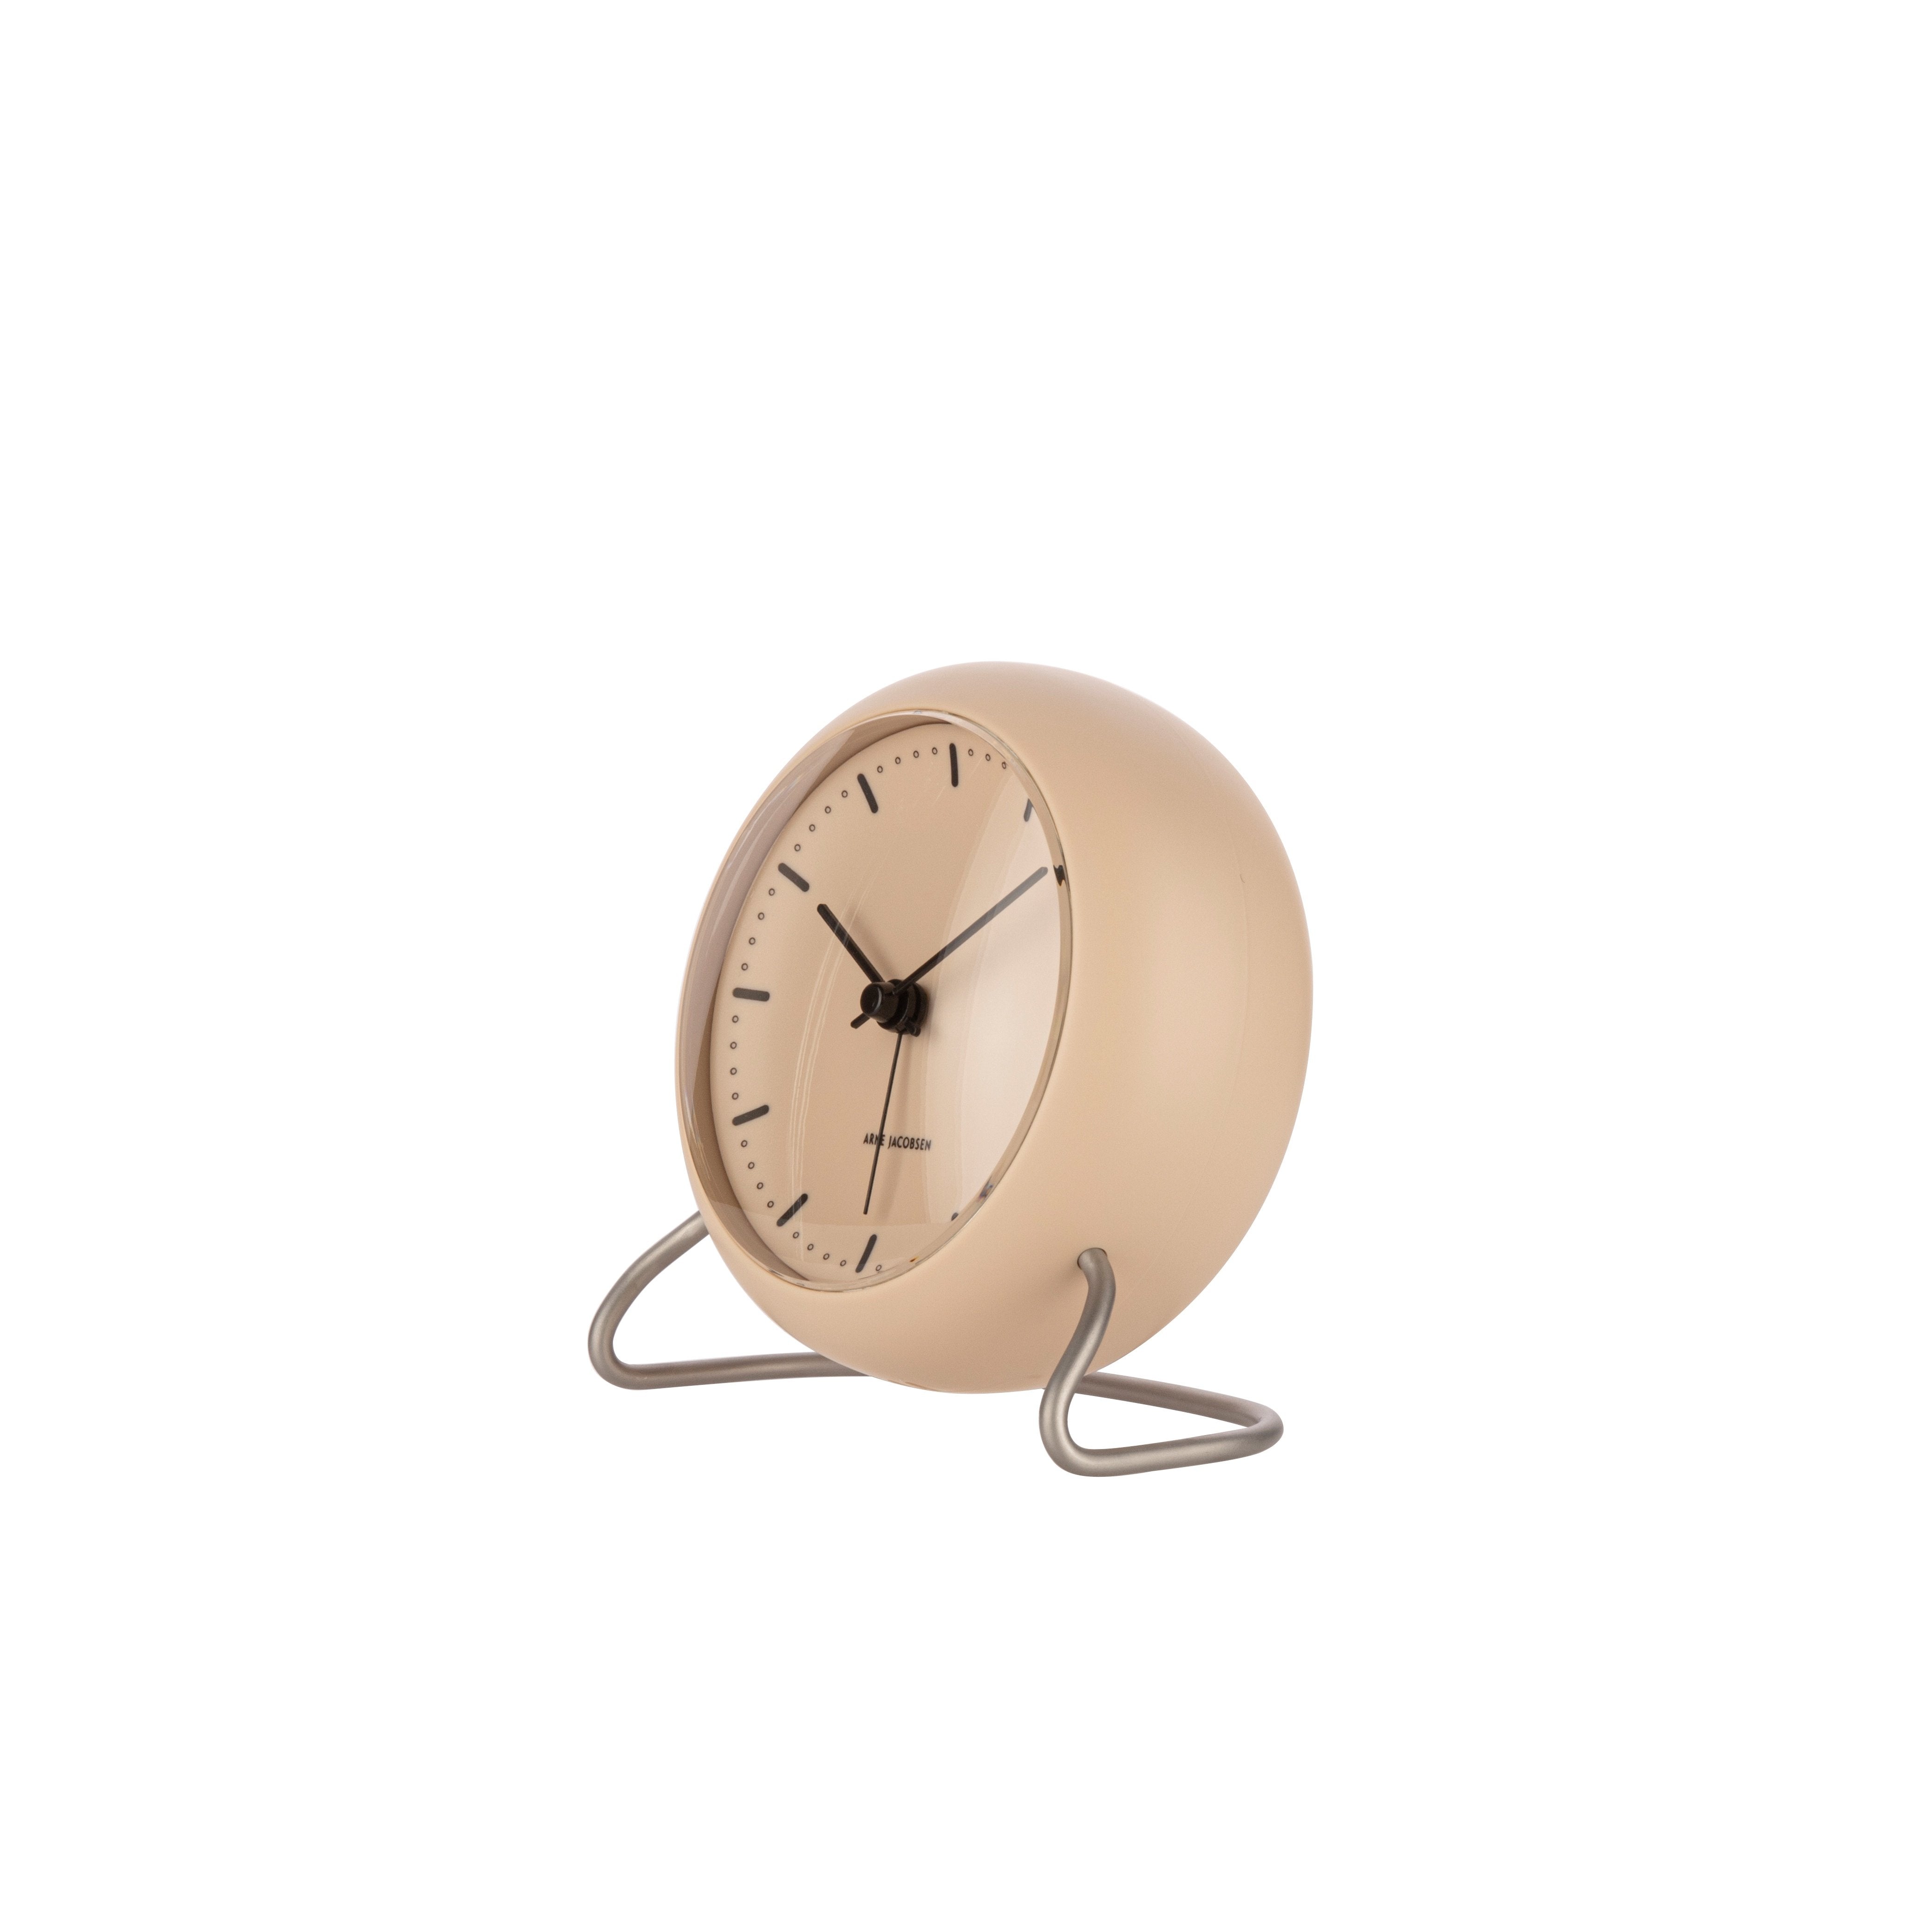 Best Arne Jacobsen Table Clock - City Hall Alarm in Beige